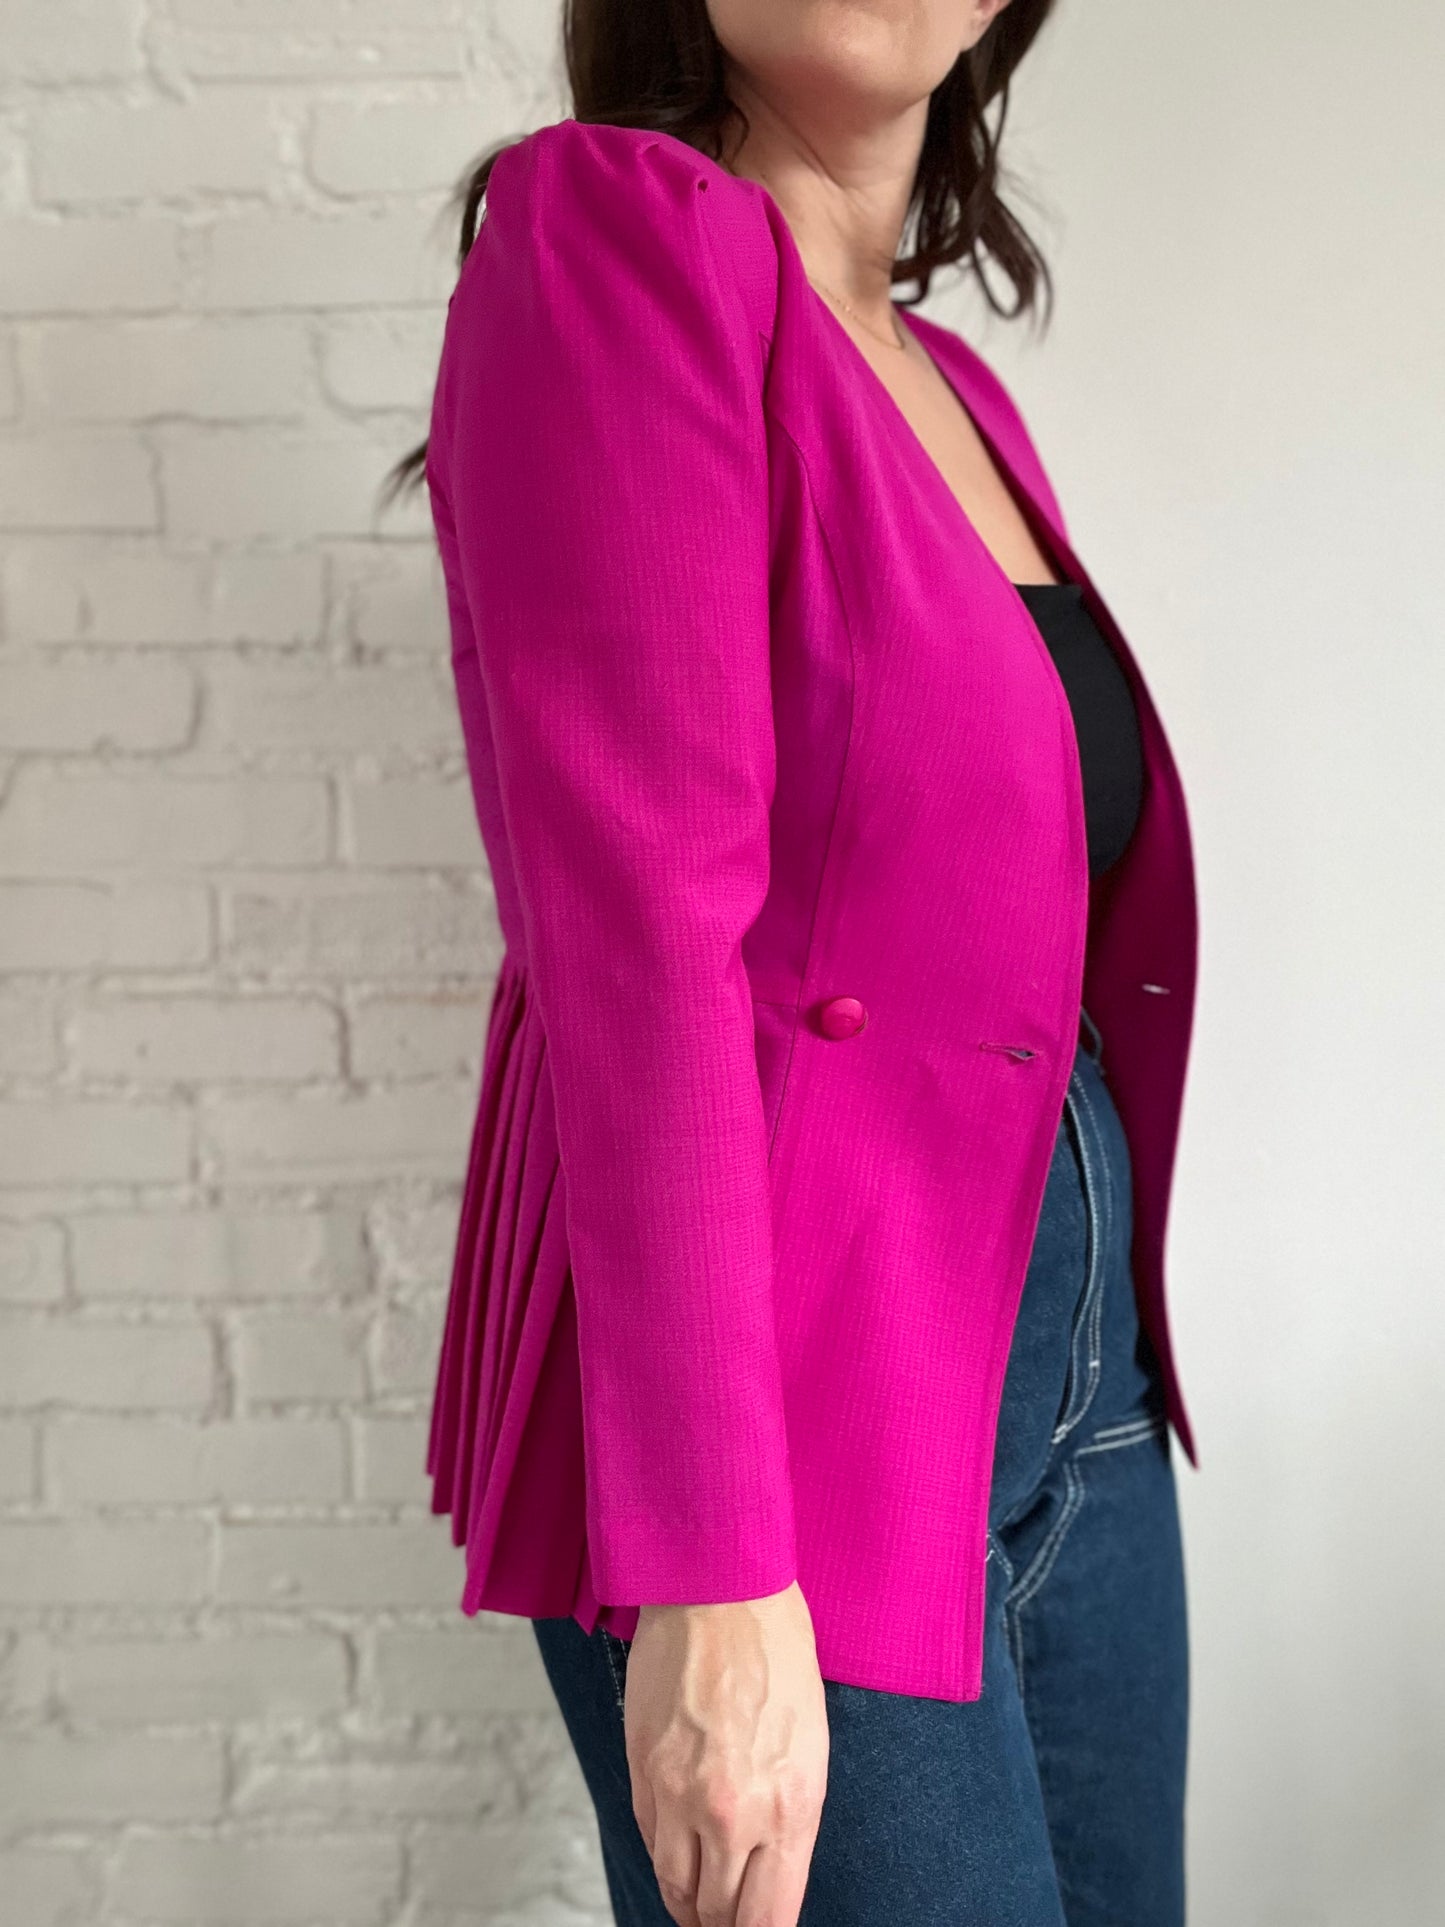 Pink Pleated Blazer - Size S